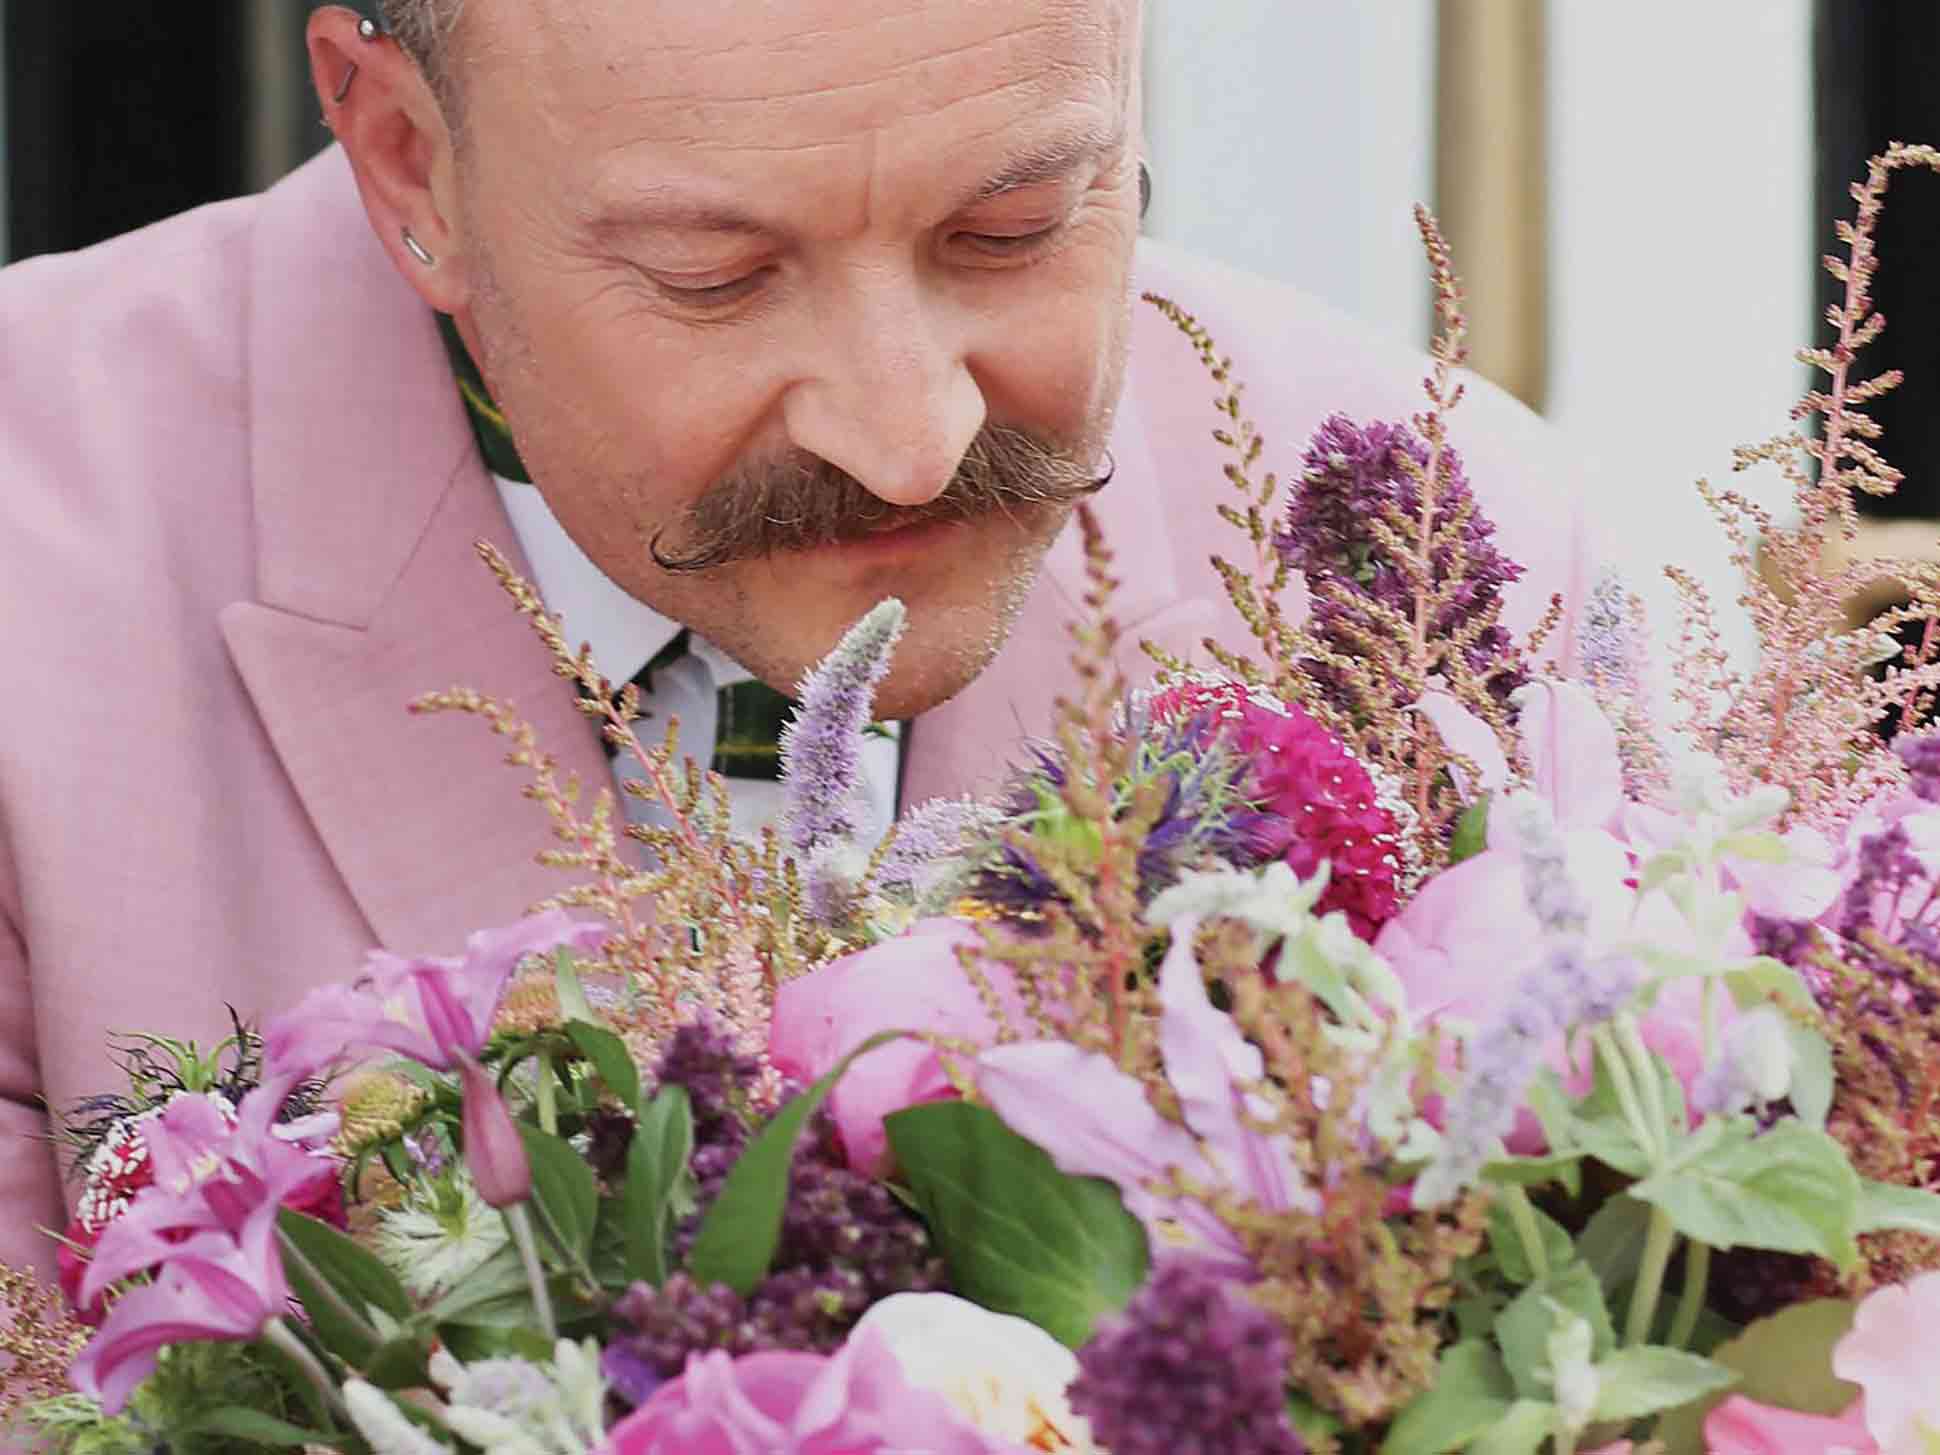 Belmond's Simon Lycett talks floral teas